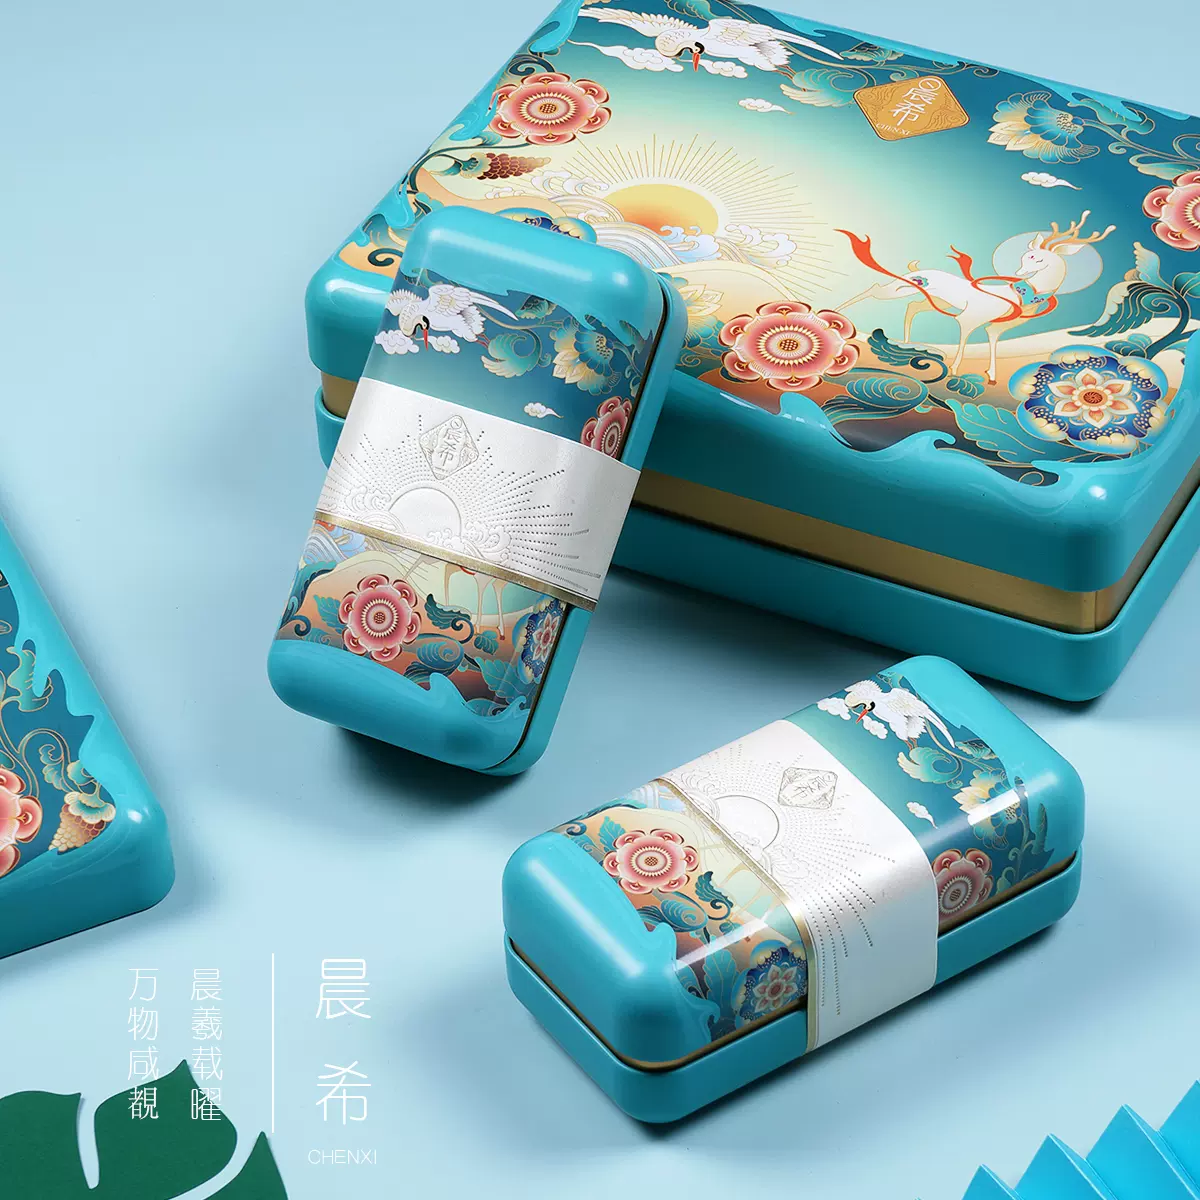 高档月饼盒碧螺春红茶绿茶罐装茶叶包装盒通用空礼盒天青色